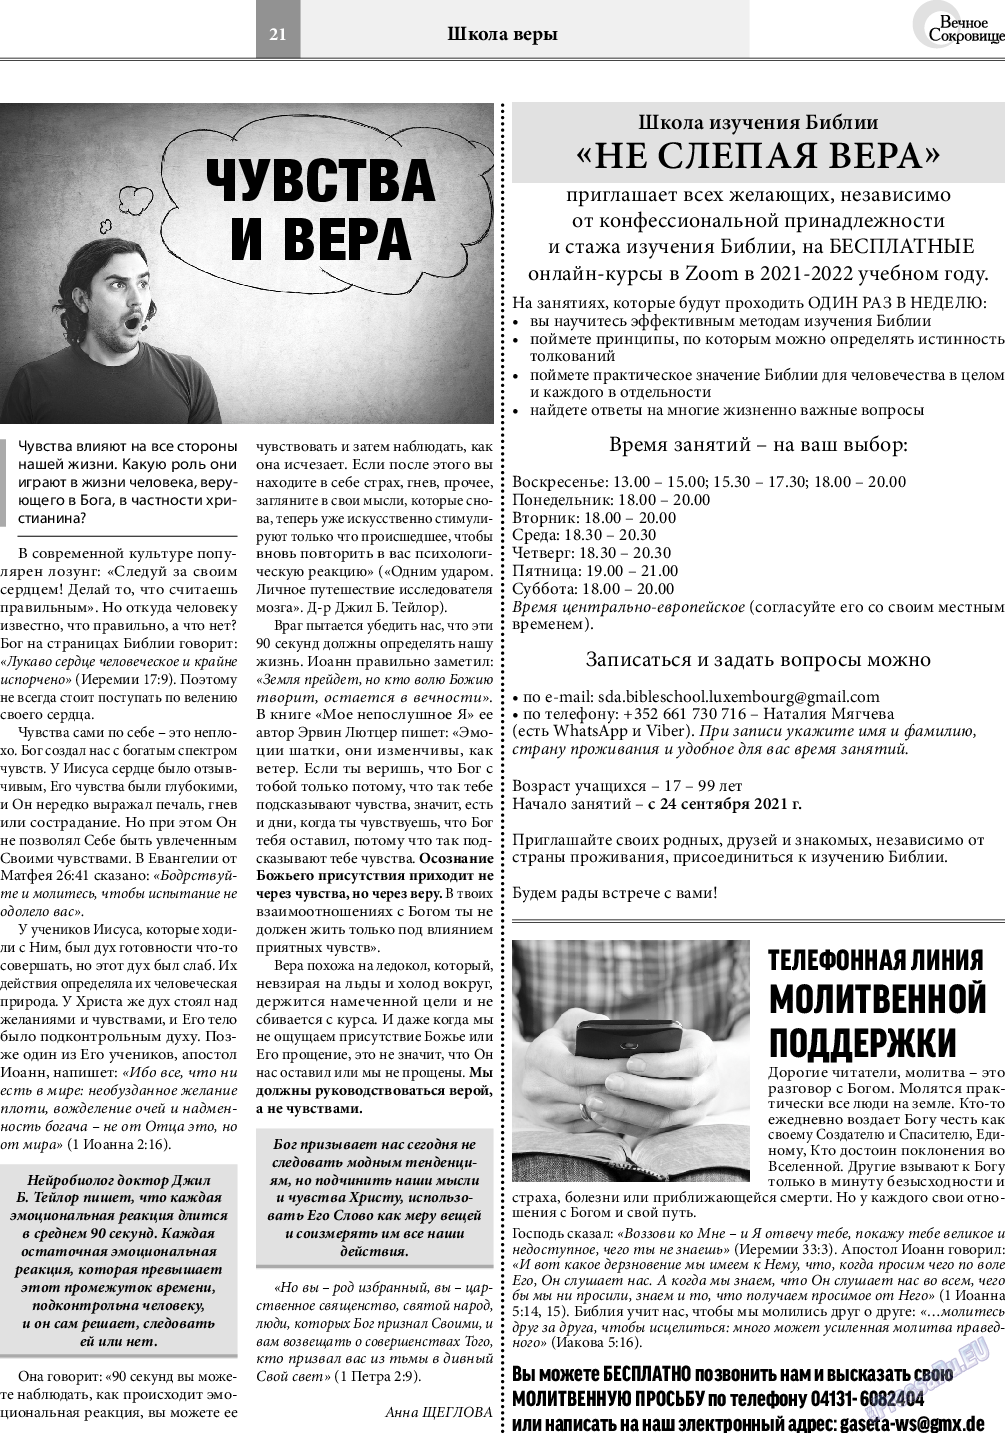 Вечное сокровище, газета. 2021 №5 стр.21